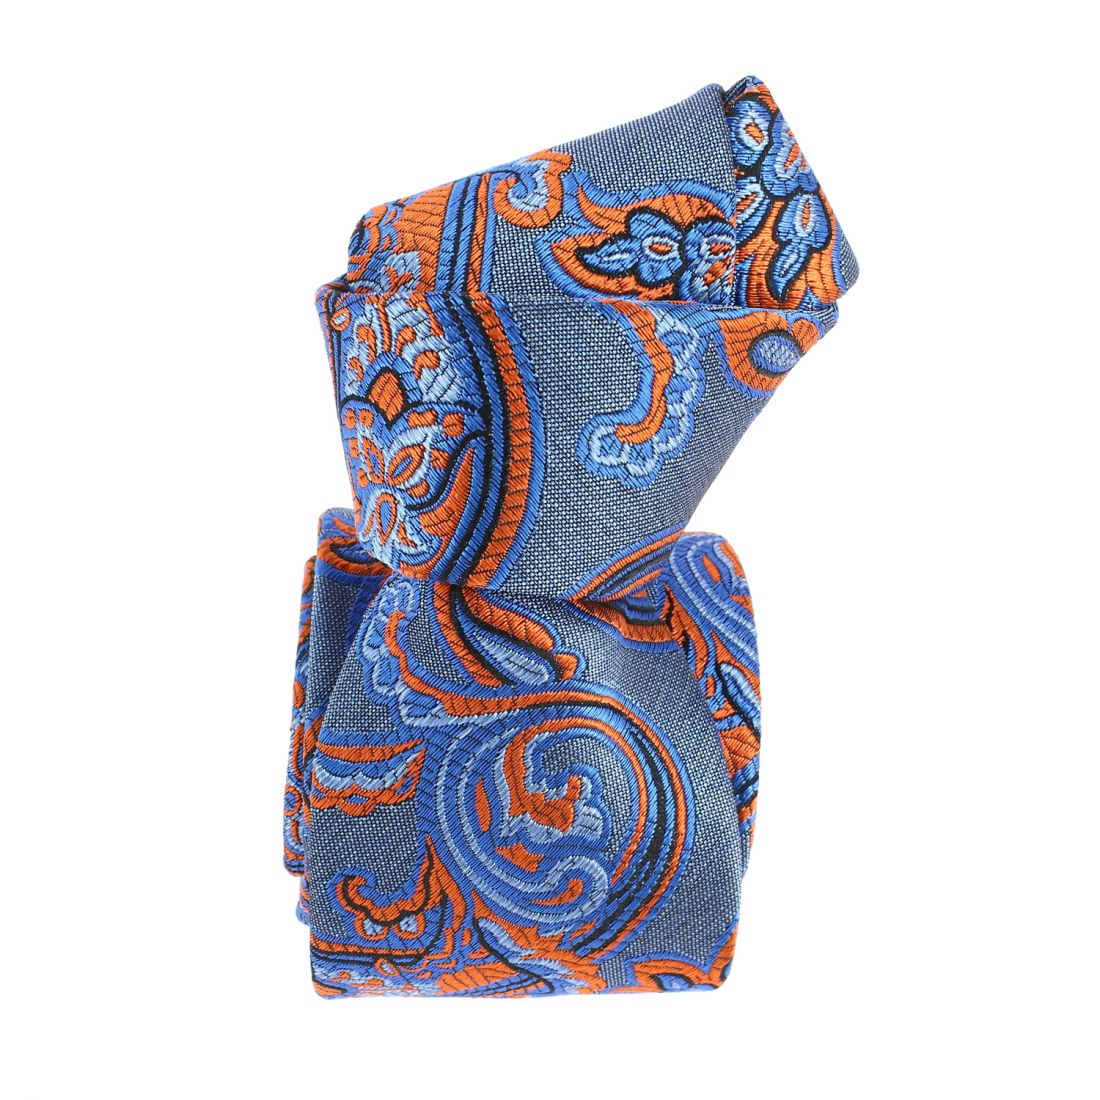 Cravate étoile, Versailles Bleu et orange, Boivin atelier Parisien BOIVIN Atelier Parisien depuis 1920